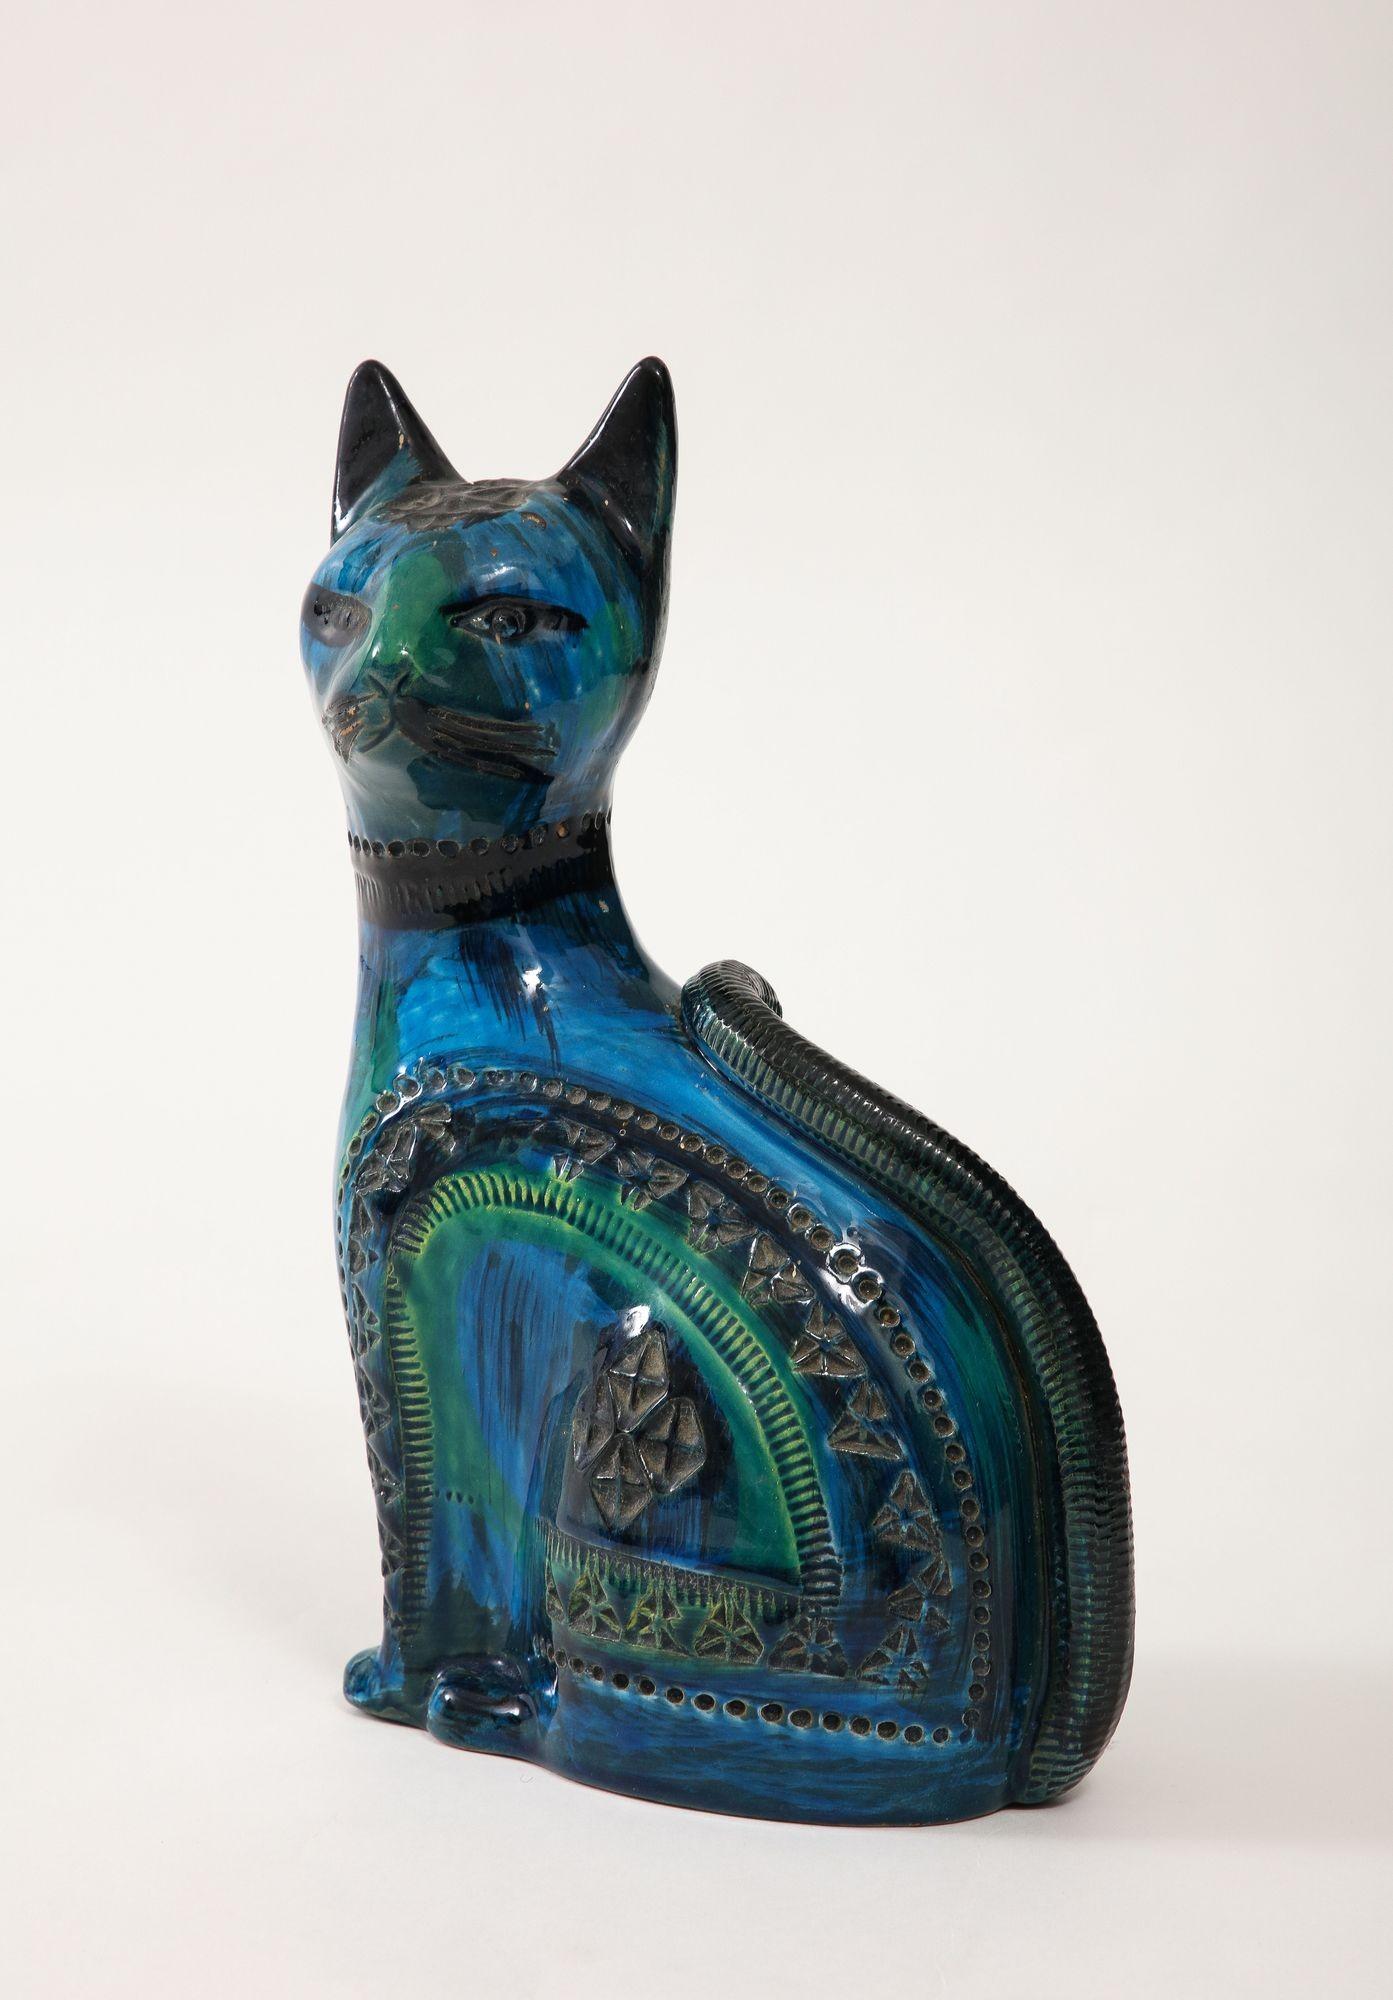 Le chat en céramique d'Aldo Londi pour Bitossi, réalisé dans la glaçure emblématique 